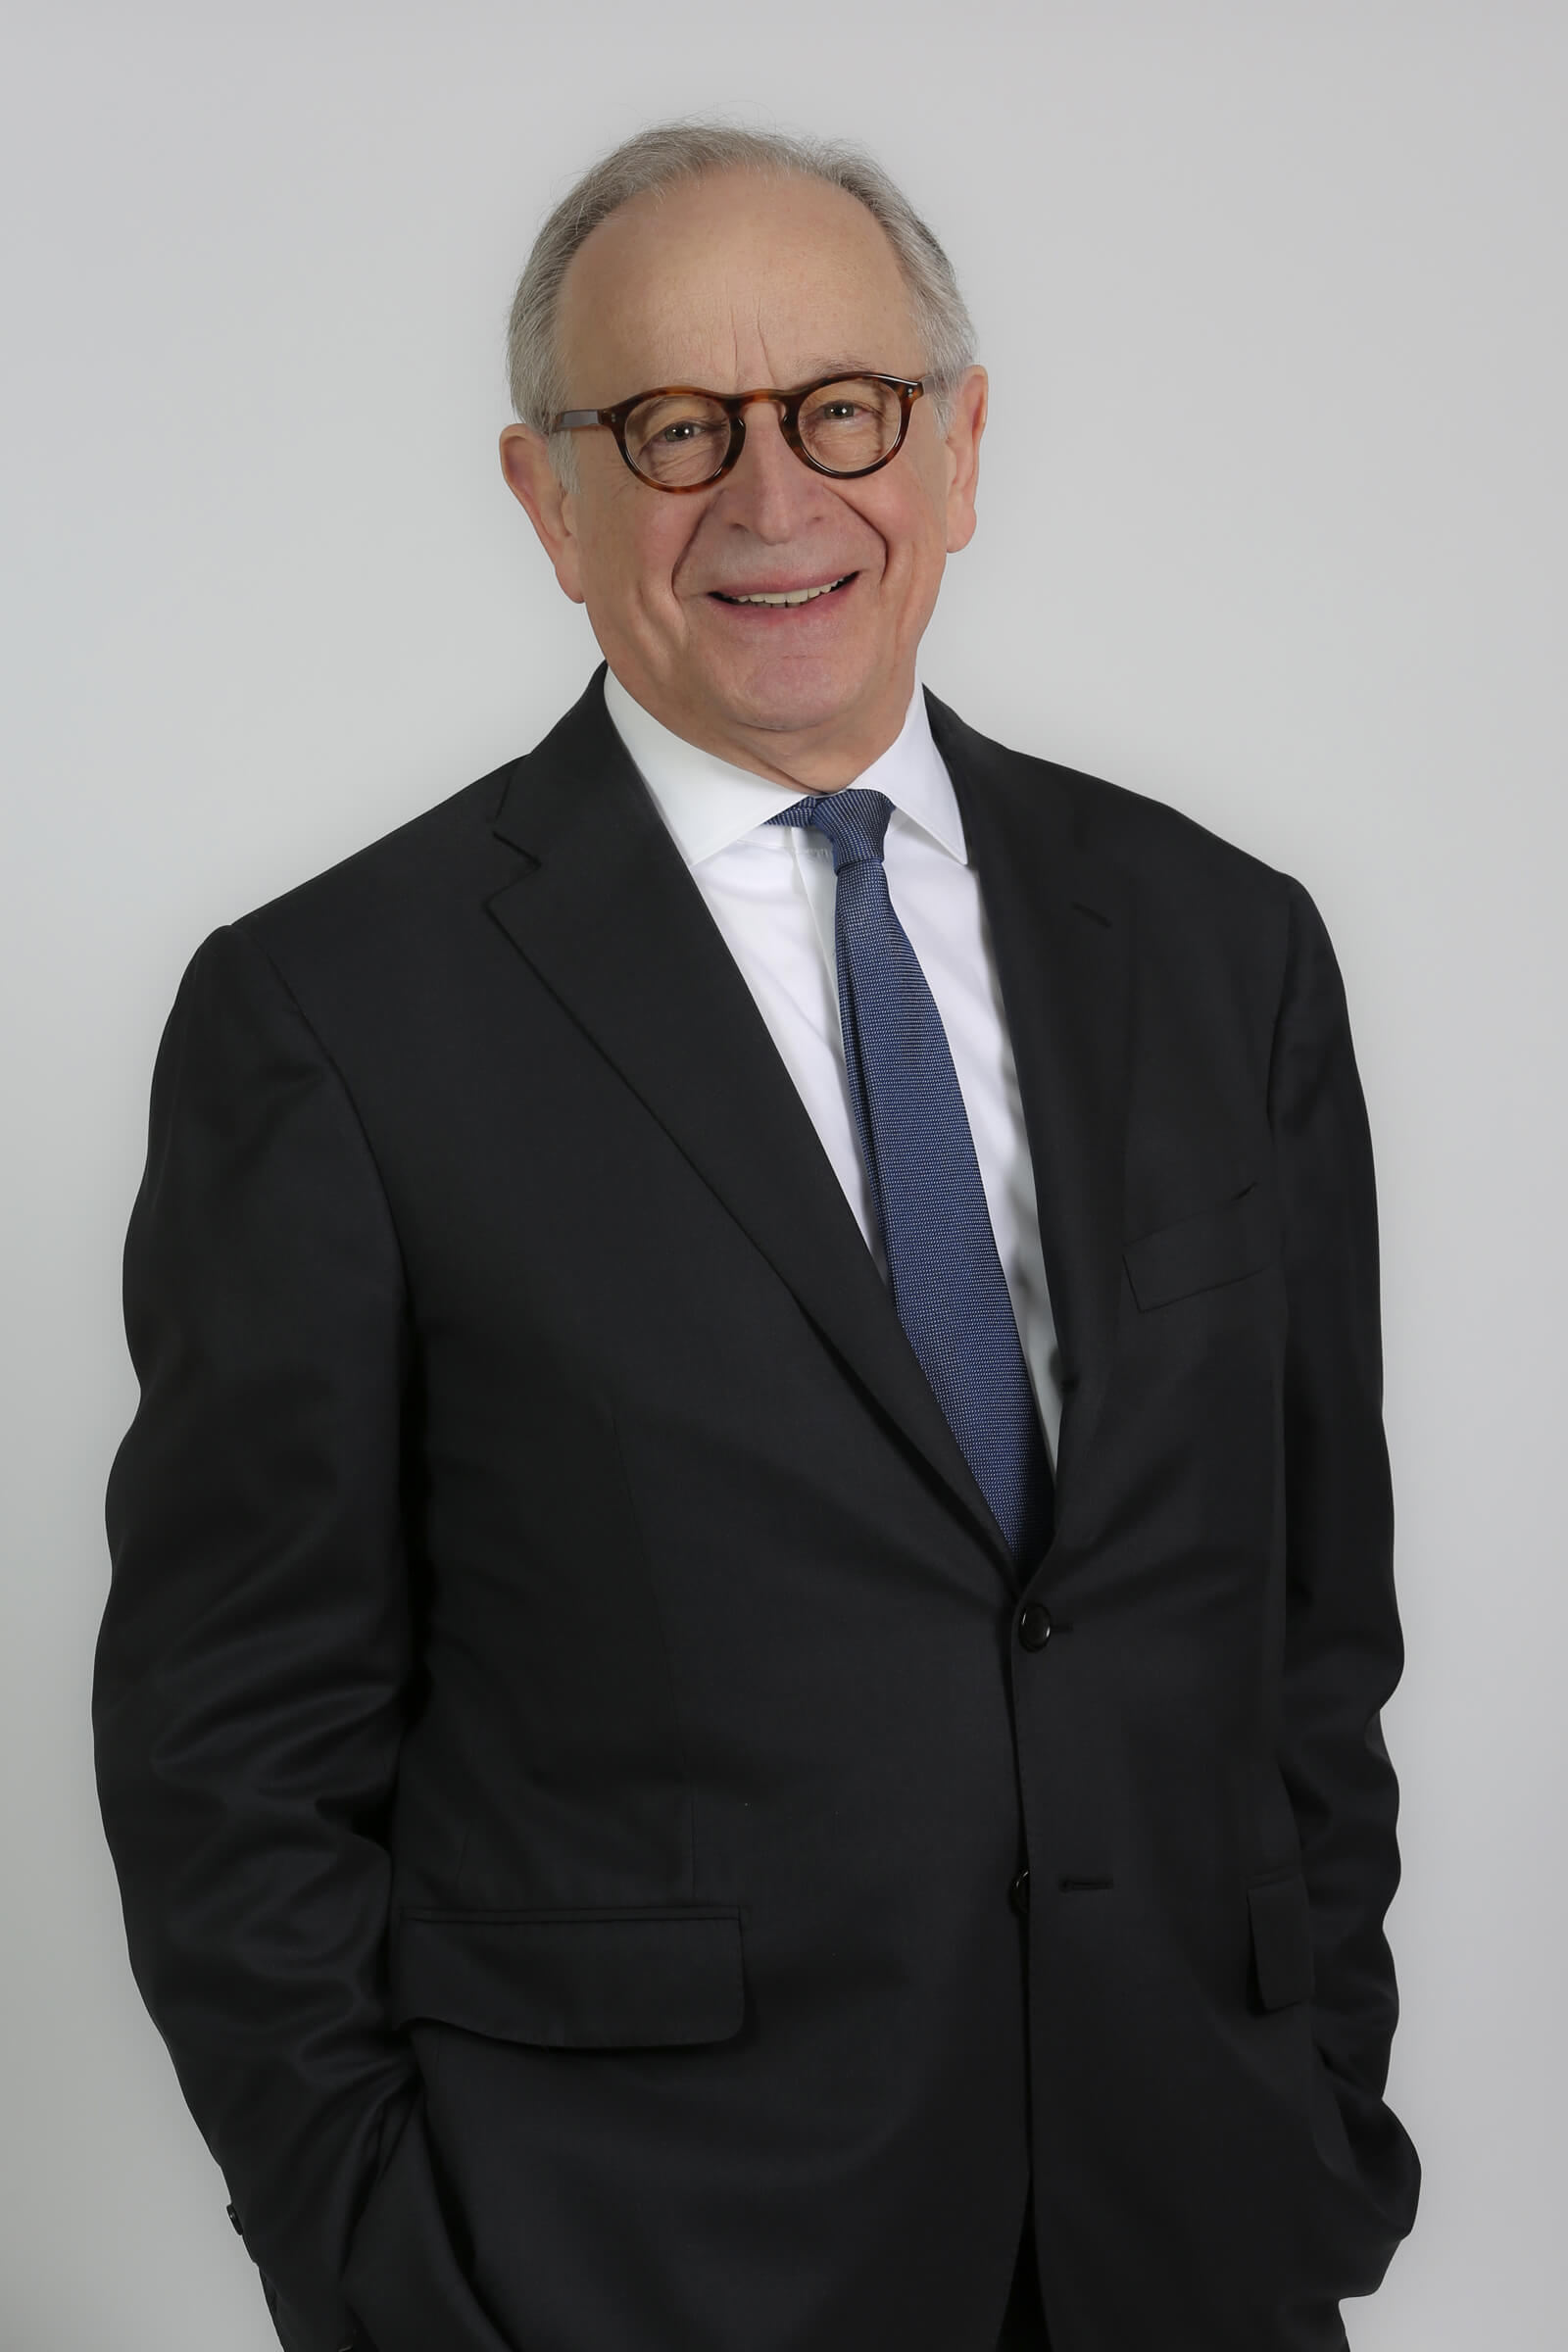 Léon Bressler, President of the Supervisory Board